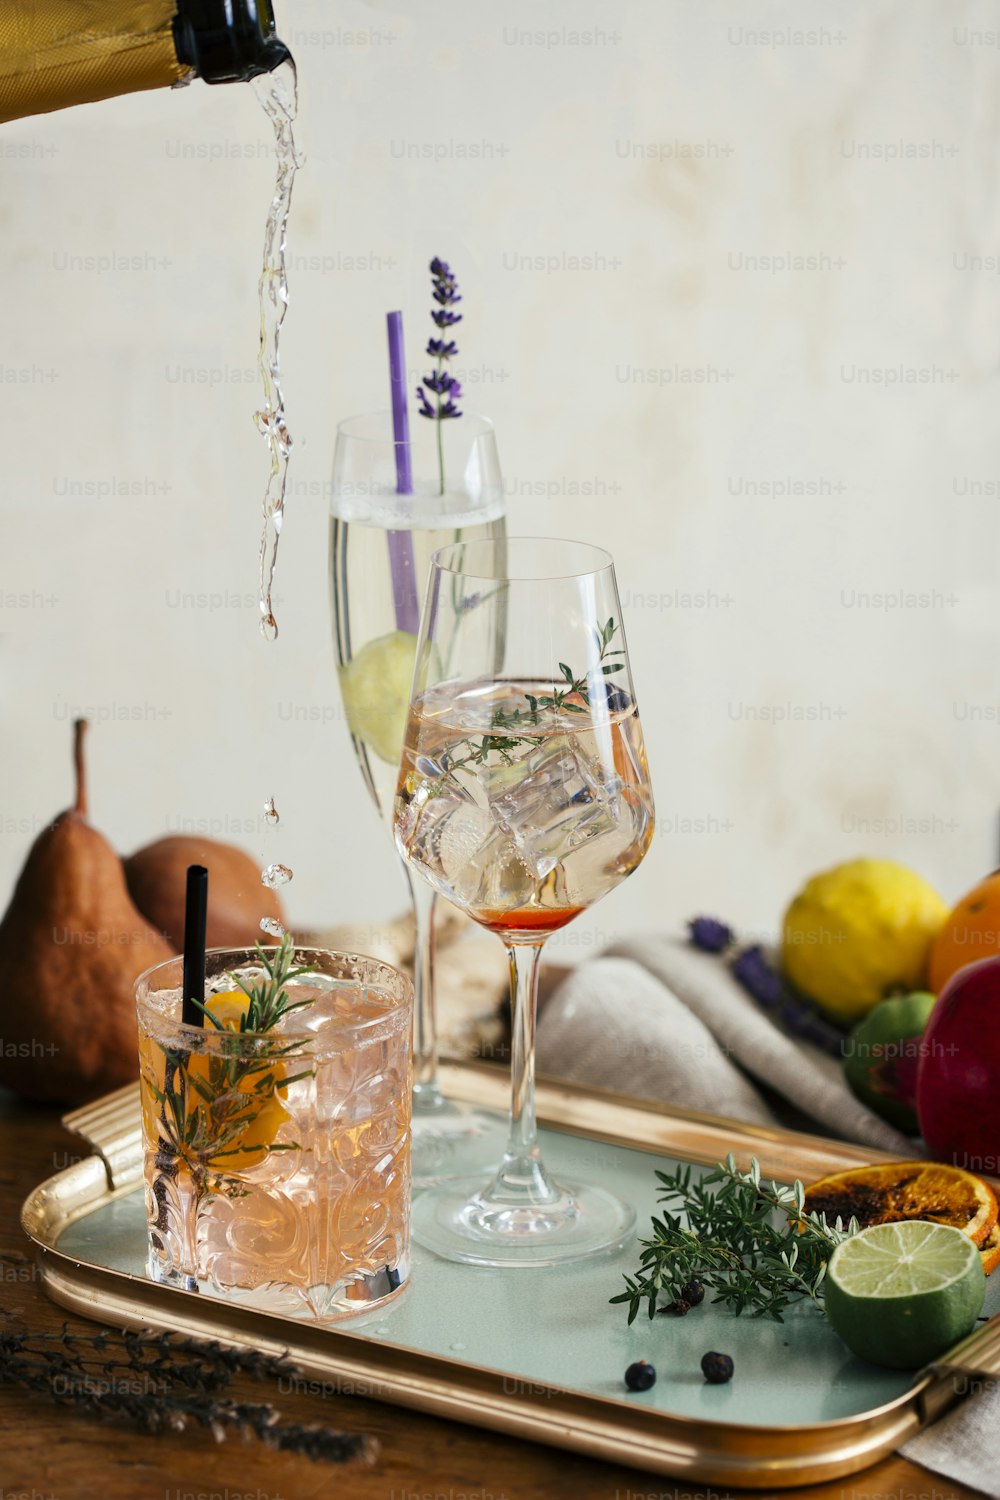 Cocktail a base di prosecco, aperitivo con prosecco, vino bianco frizzante, amaro, timo e bacche di ginepro; Prosecco, lime e lavanda; e Prosecco, arancia e rosmarino